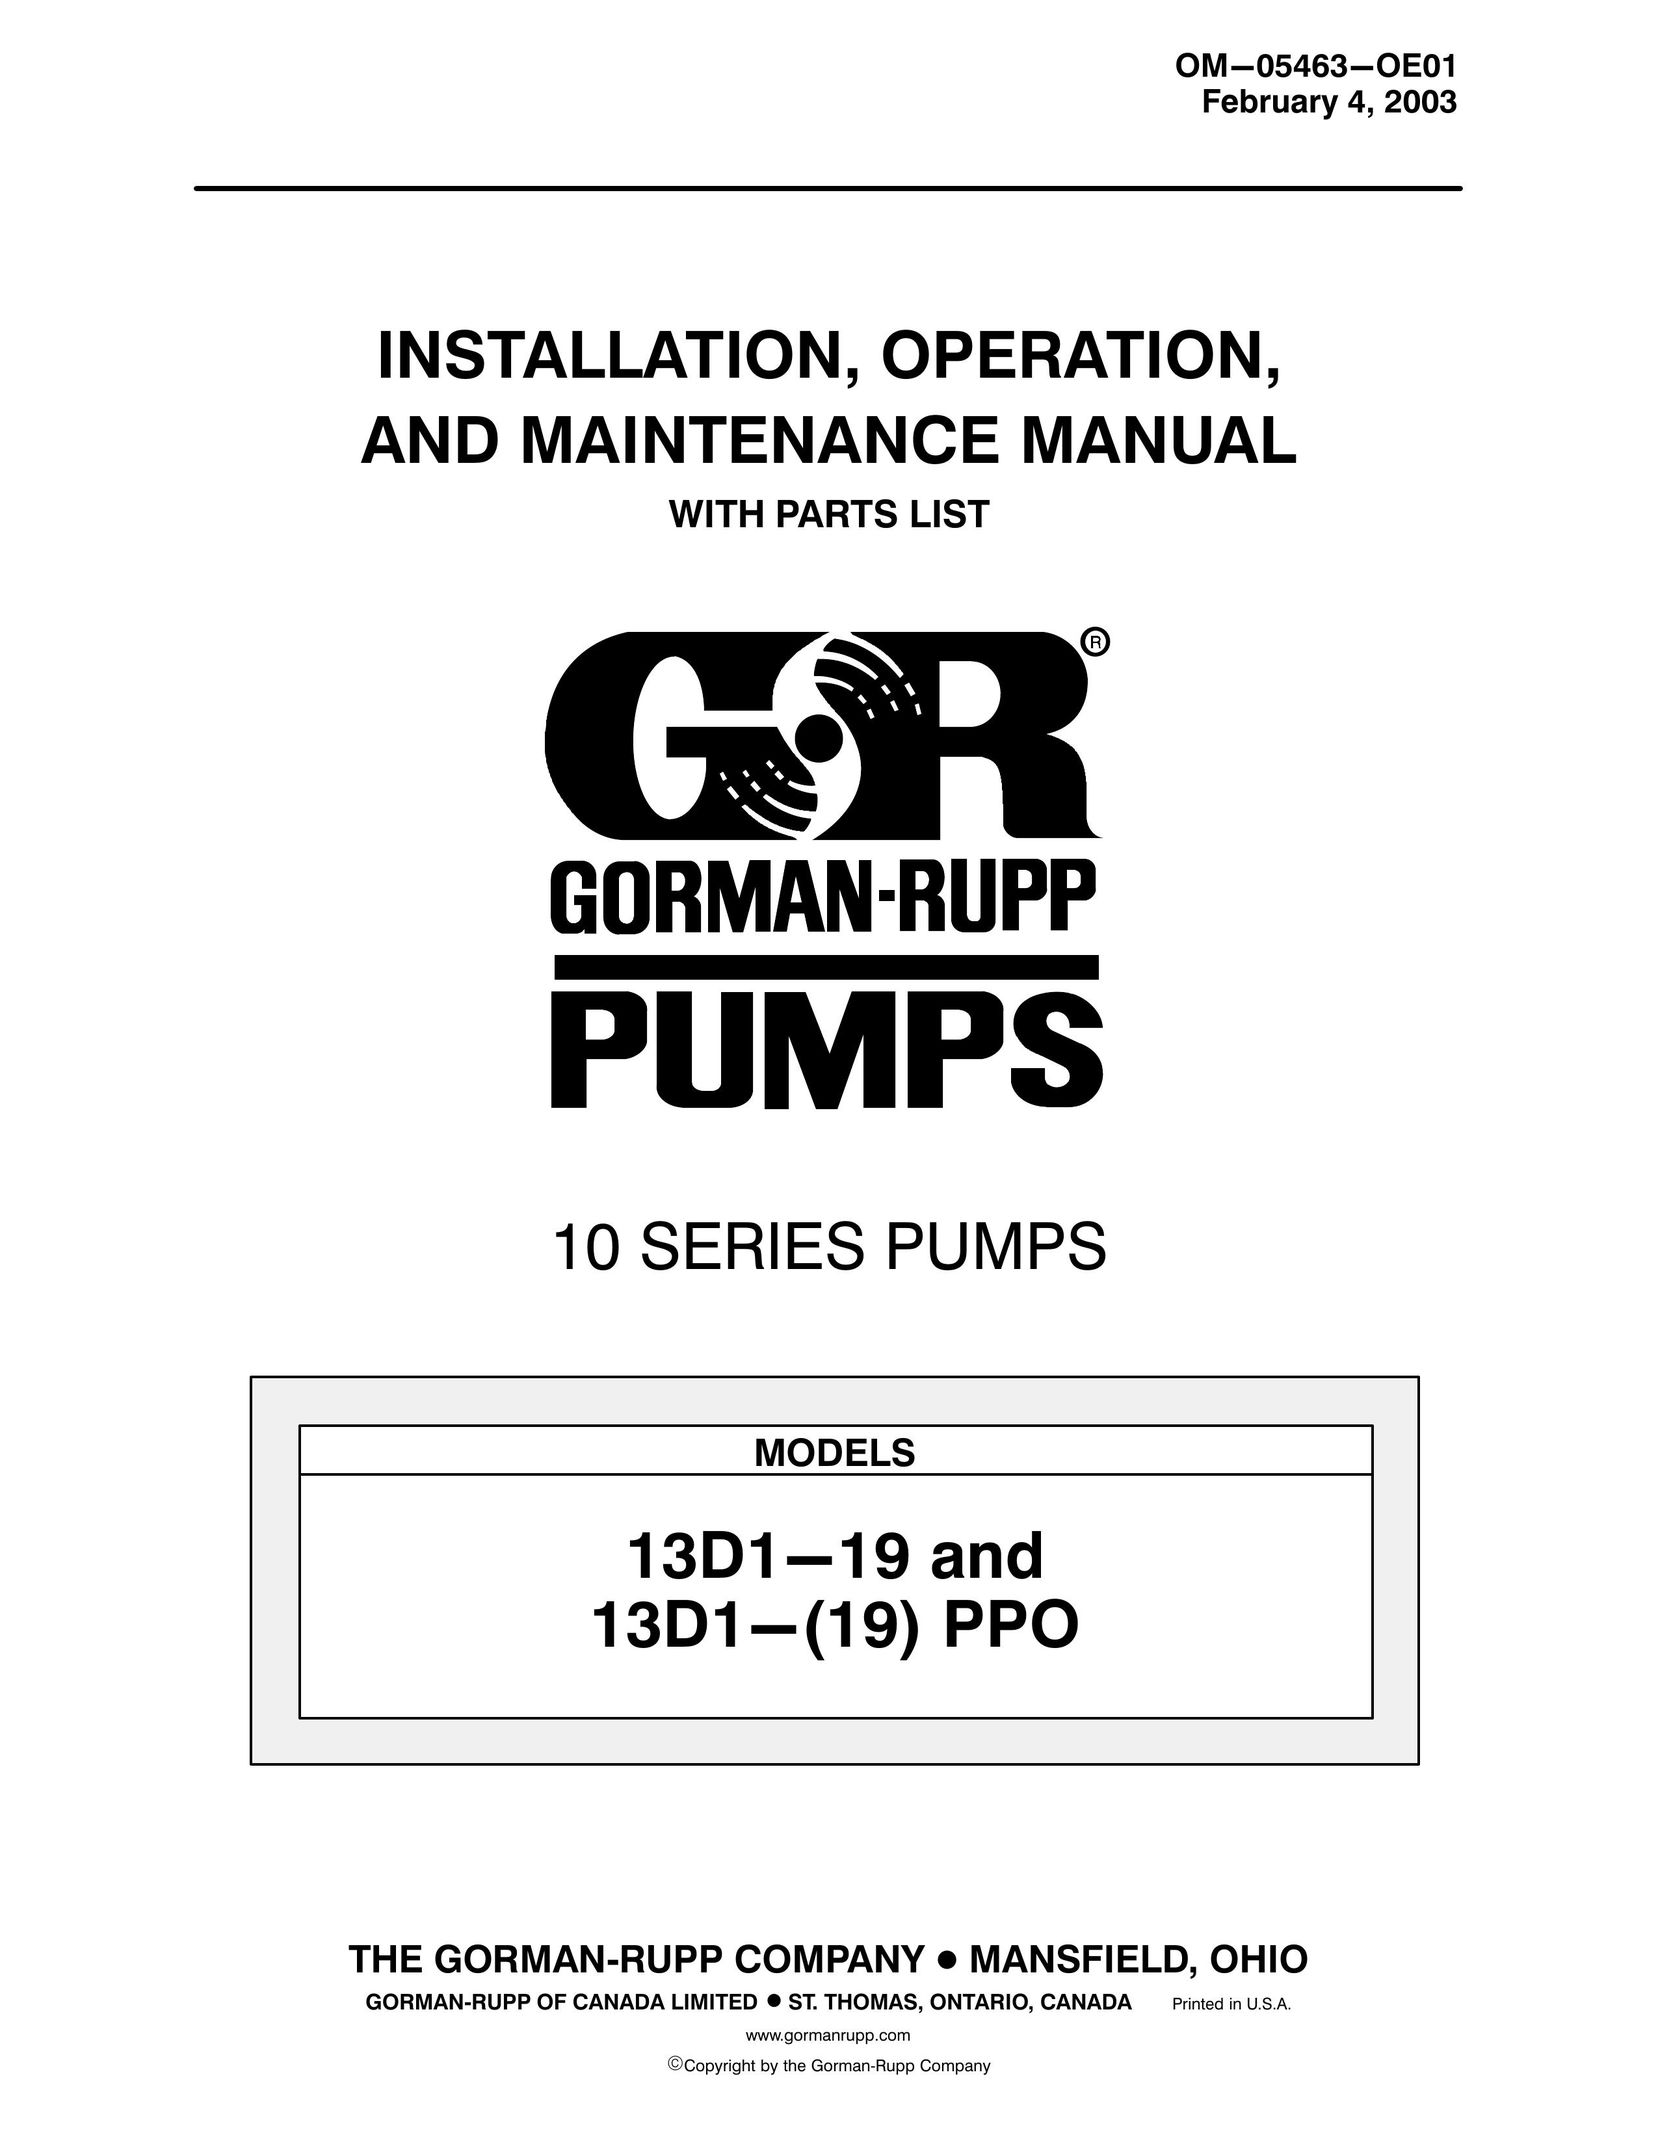 Briggs & Stratton 13D1-(19) PPO Heat Pump User Manual